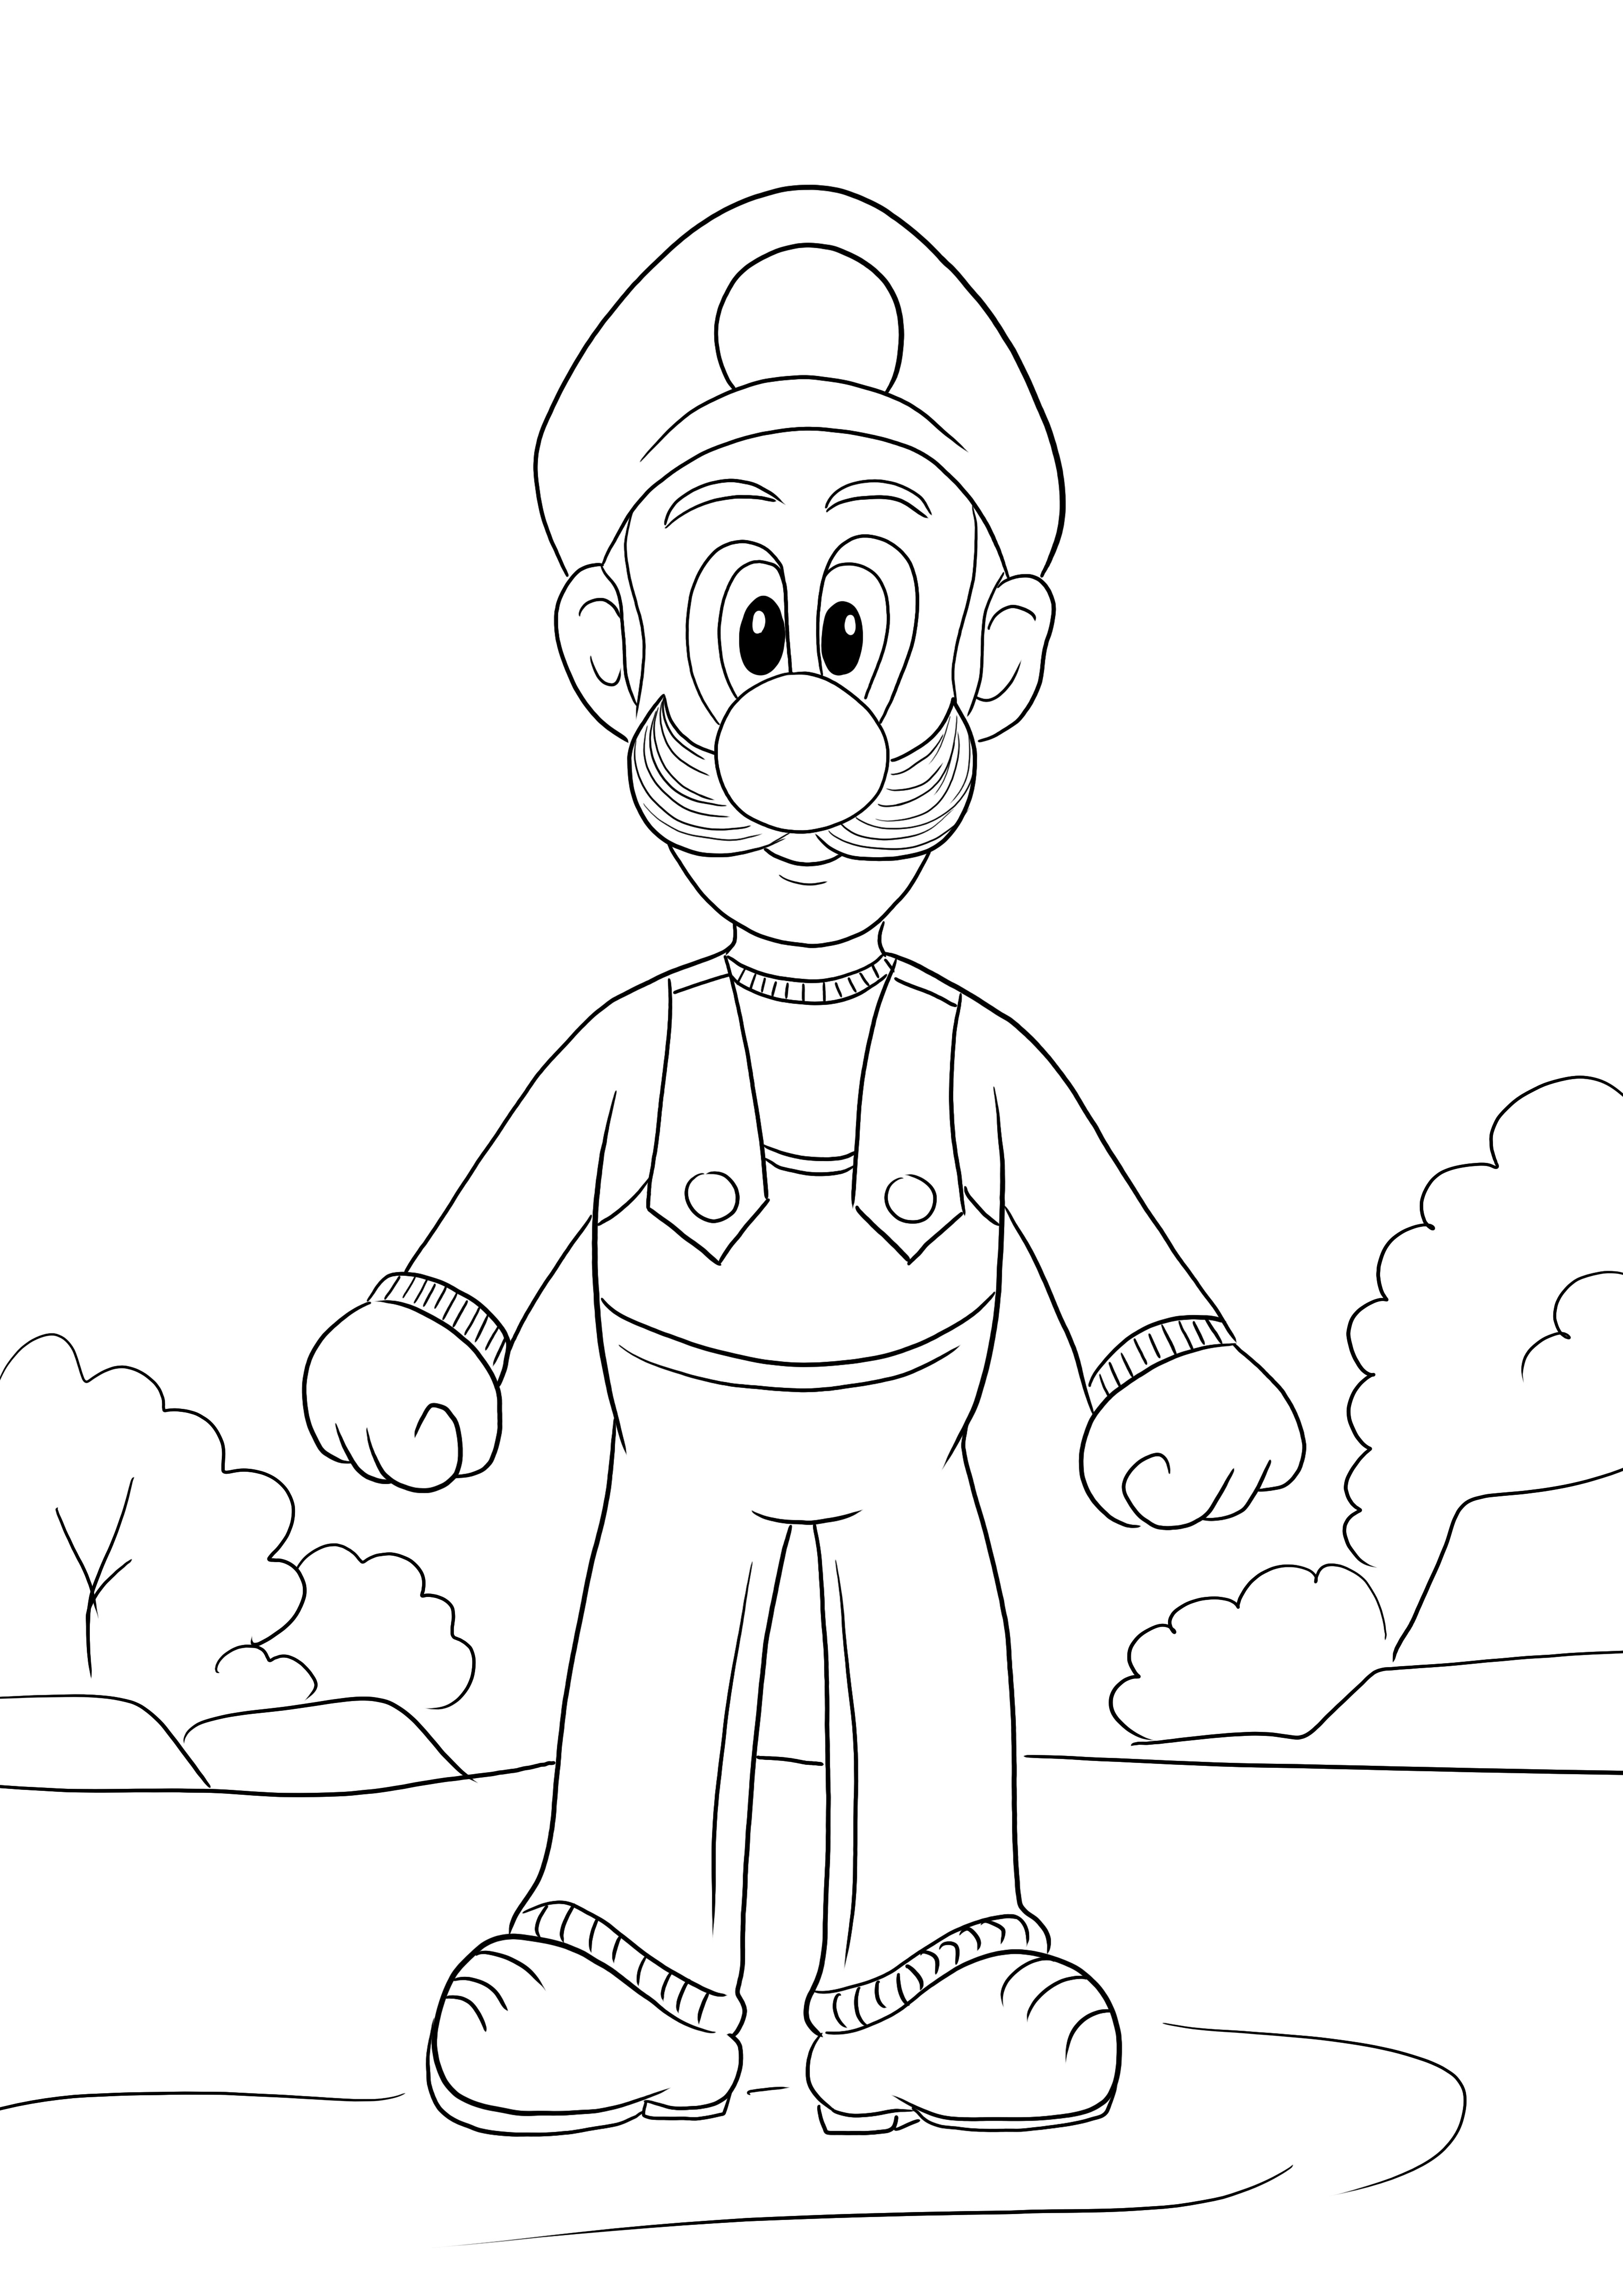 İşte indirmek veya ücretsiz yazdırmak için Super Mario oyunundan Luigi'nin ücretsiz bir boyama görüntüsü